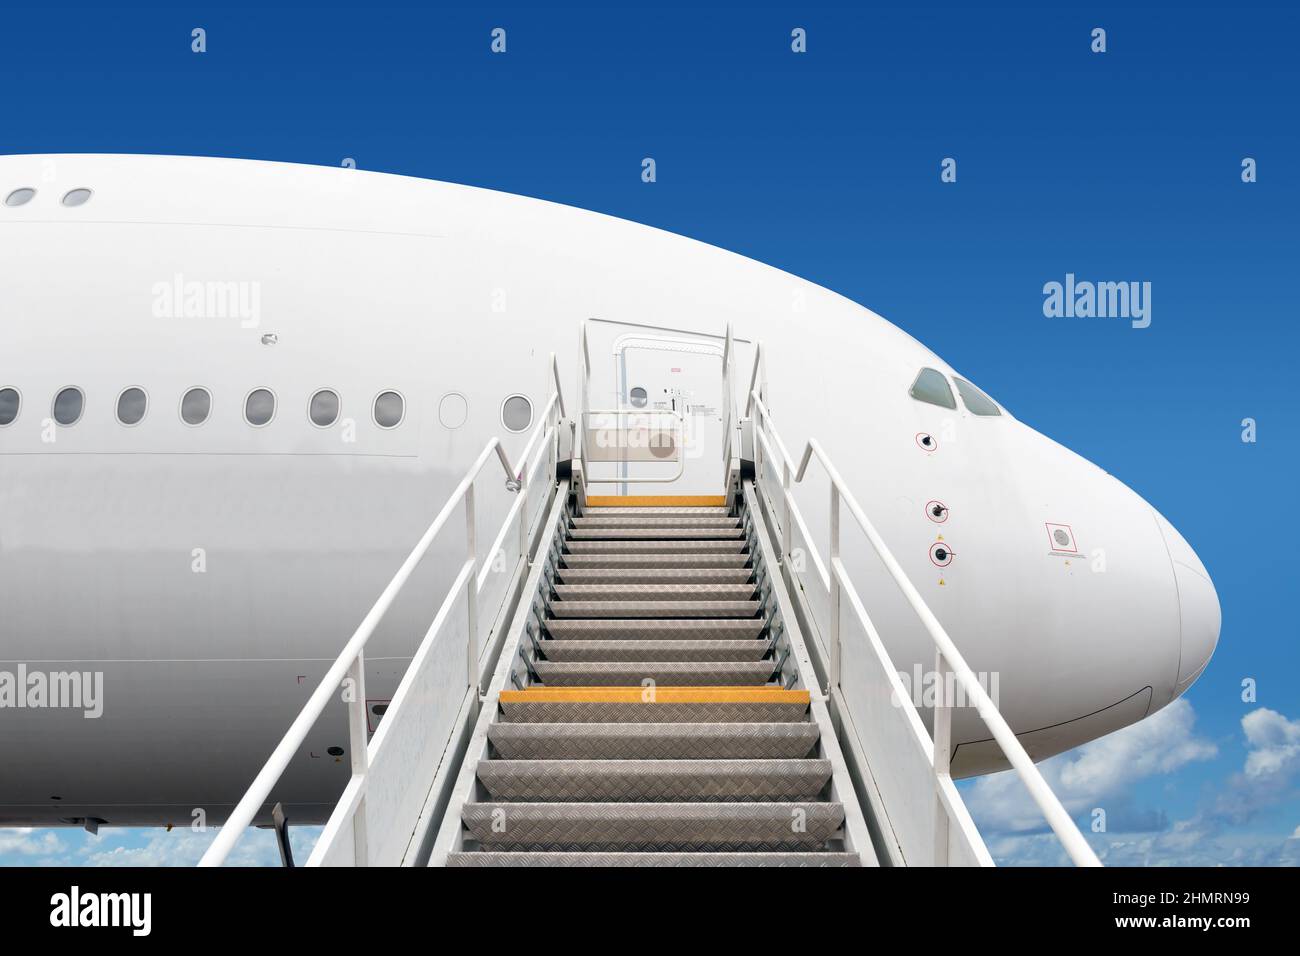 escaleras de embarque de pasajeros que conducen a la entrada de grandes aviones de reacción Foto de stock